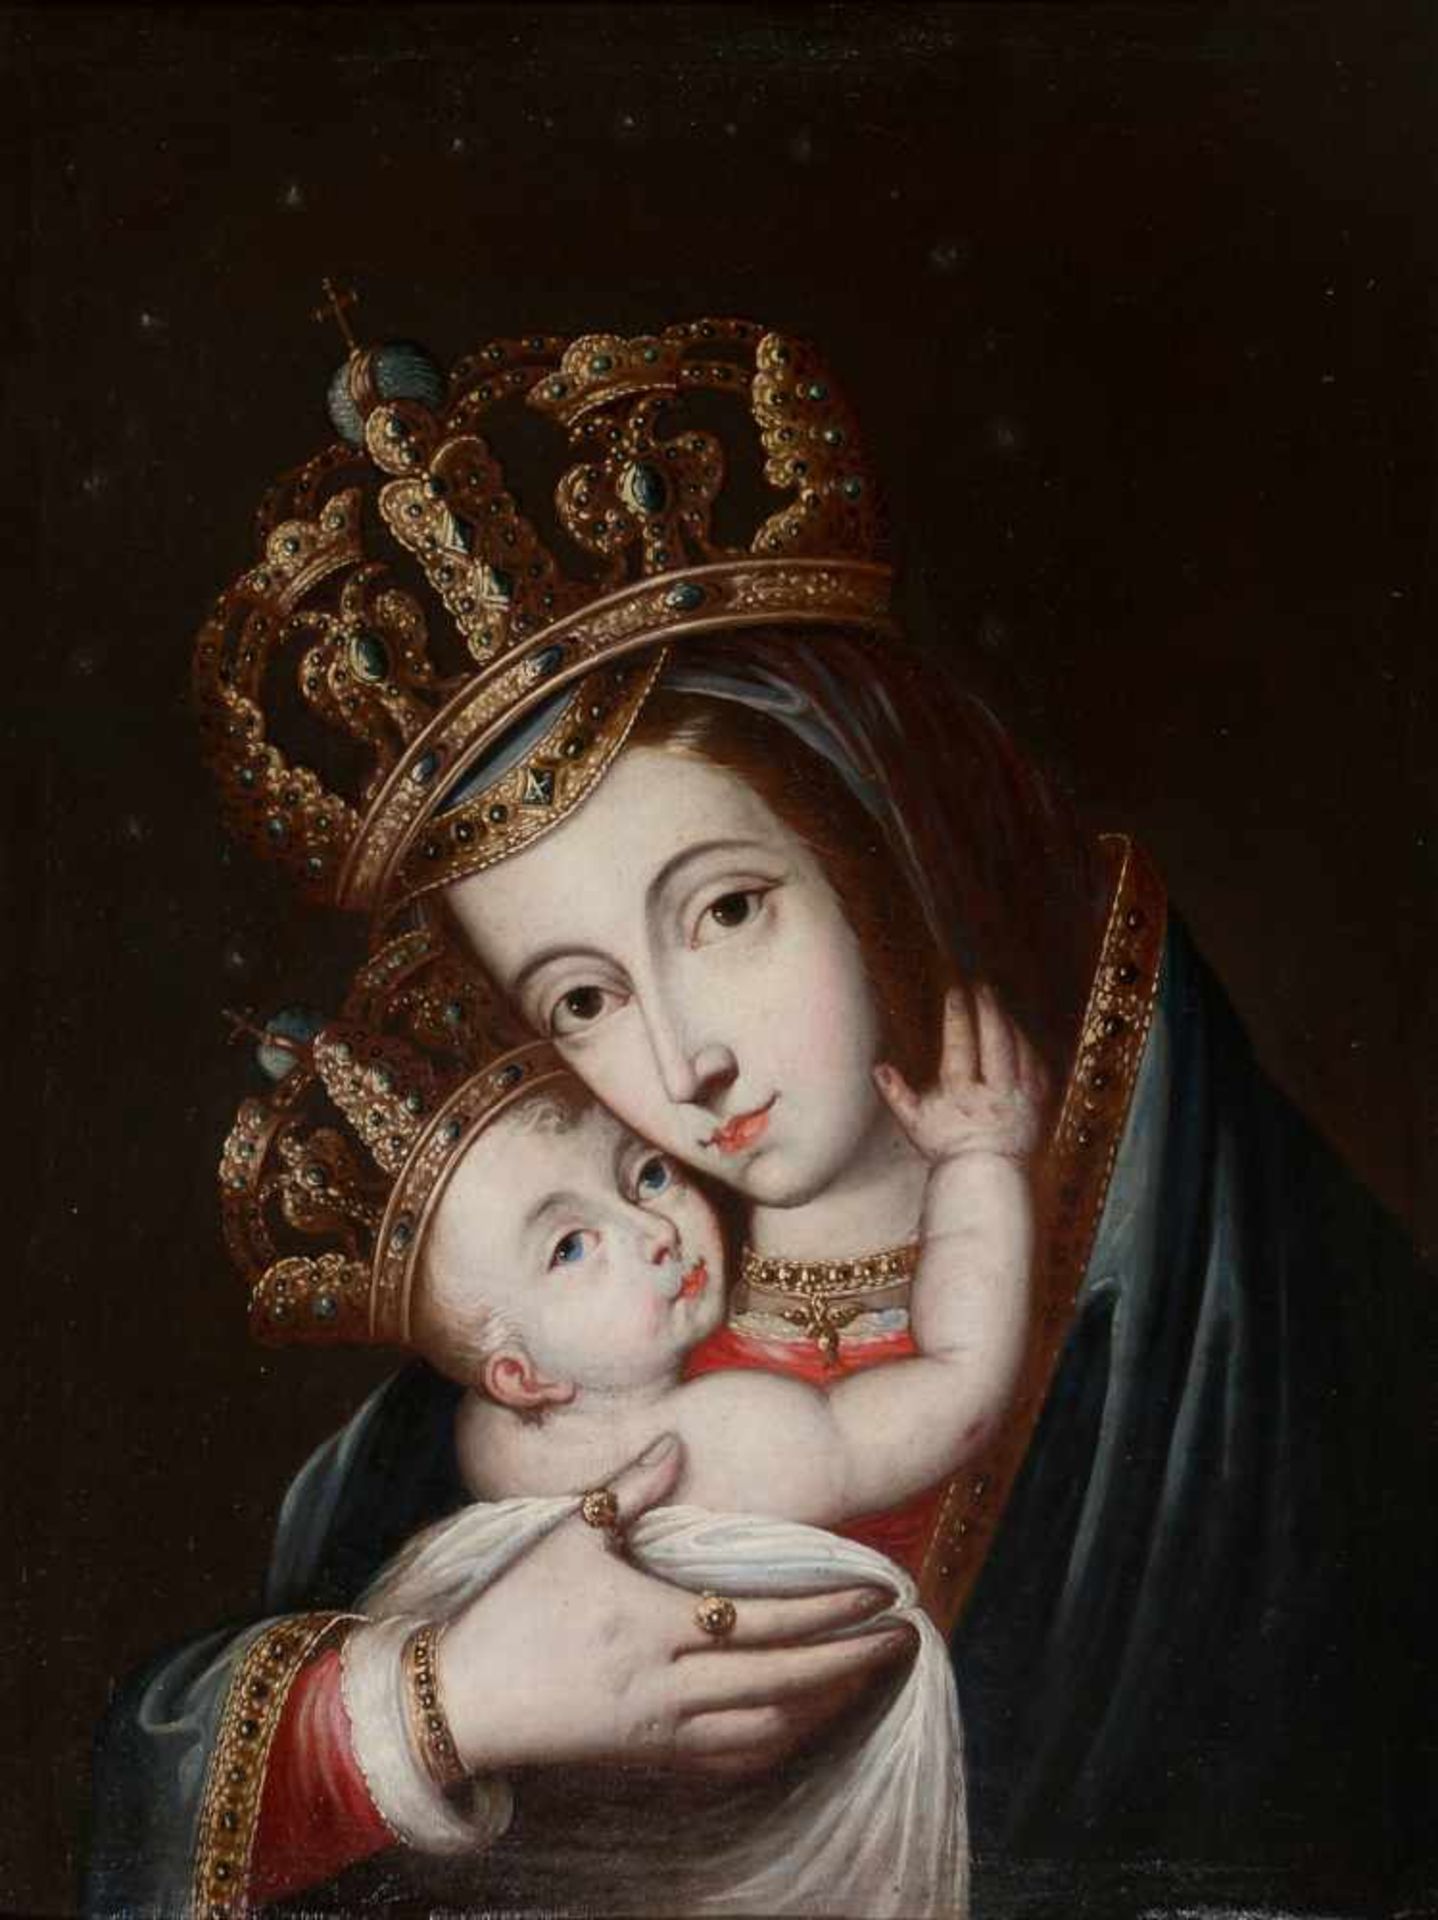 José de Arellano (Madrid, 1653 - 1714) "Madonna and Child" Oil on canvas. Signed. Circa 1695 - 1700.